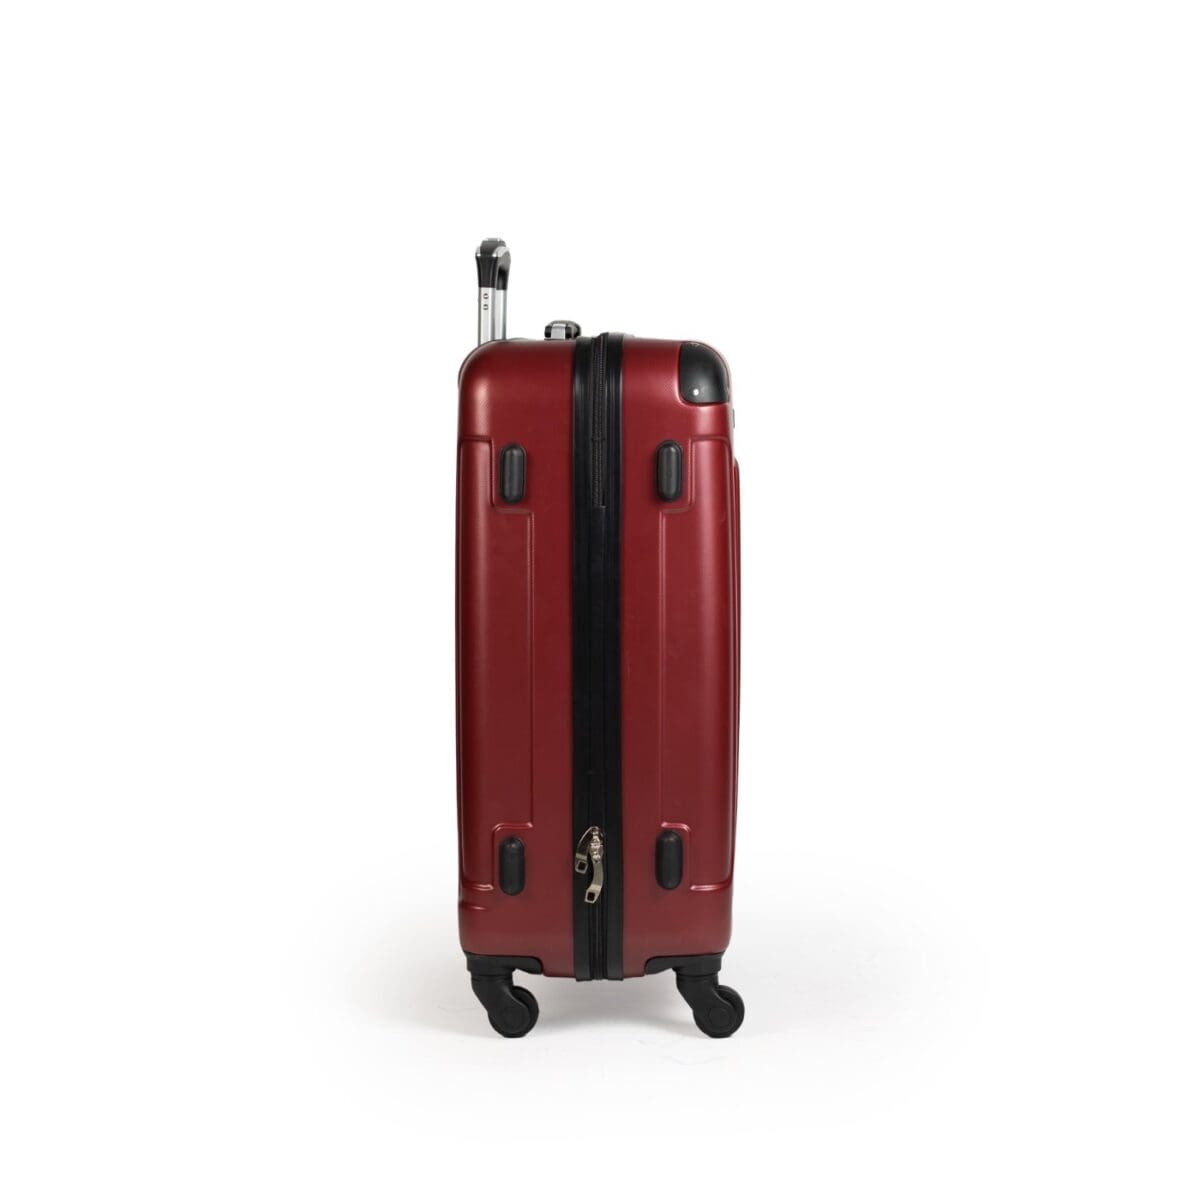 Δεξιά πλευρά βαλίτσας με πατόκουμπα σε χρώμα μπορντό